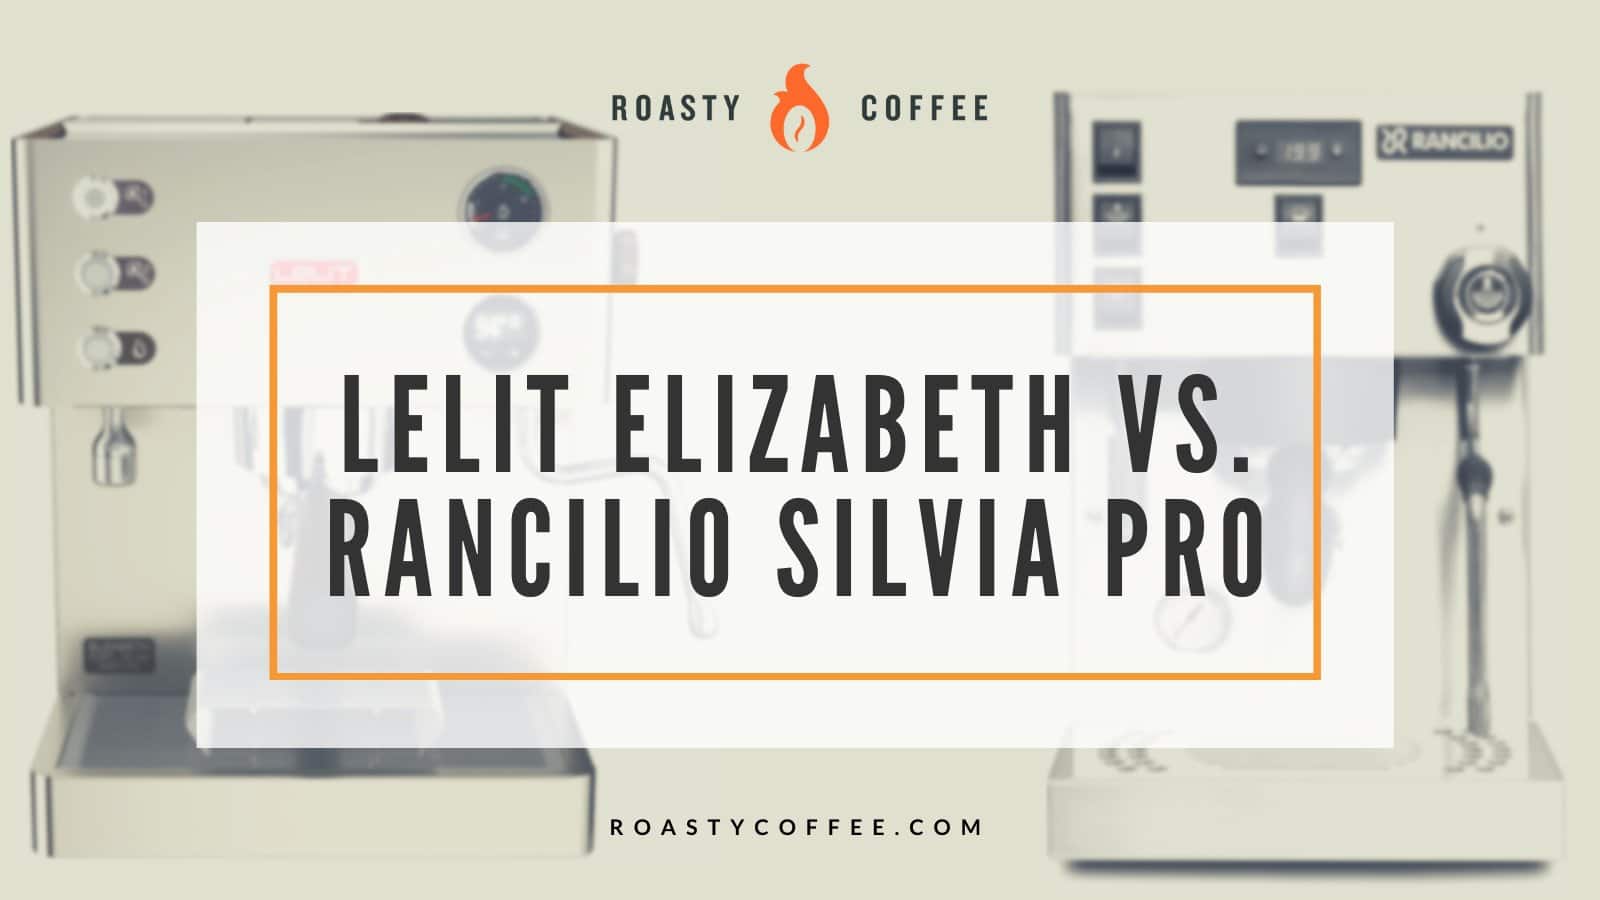 Lelit Elizabeth vs Rancilio Silvia Pro